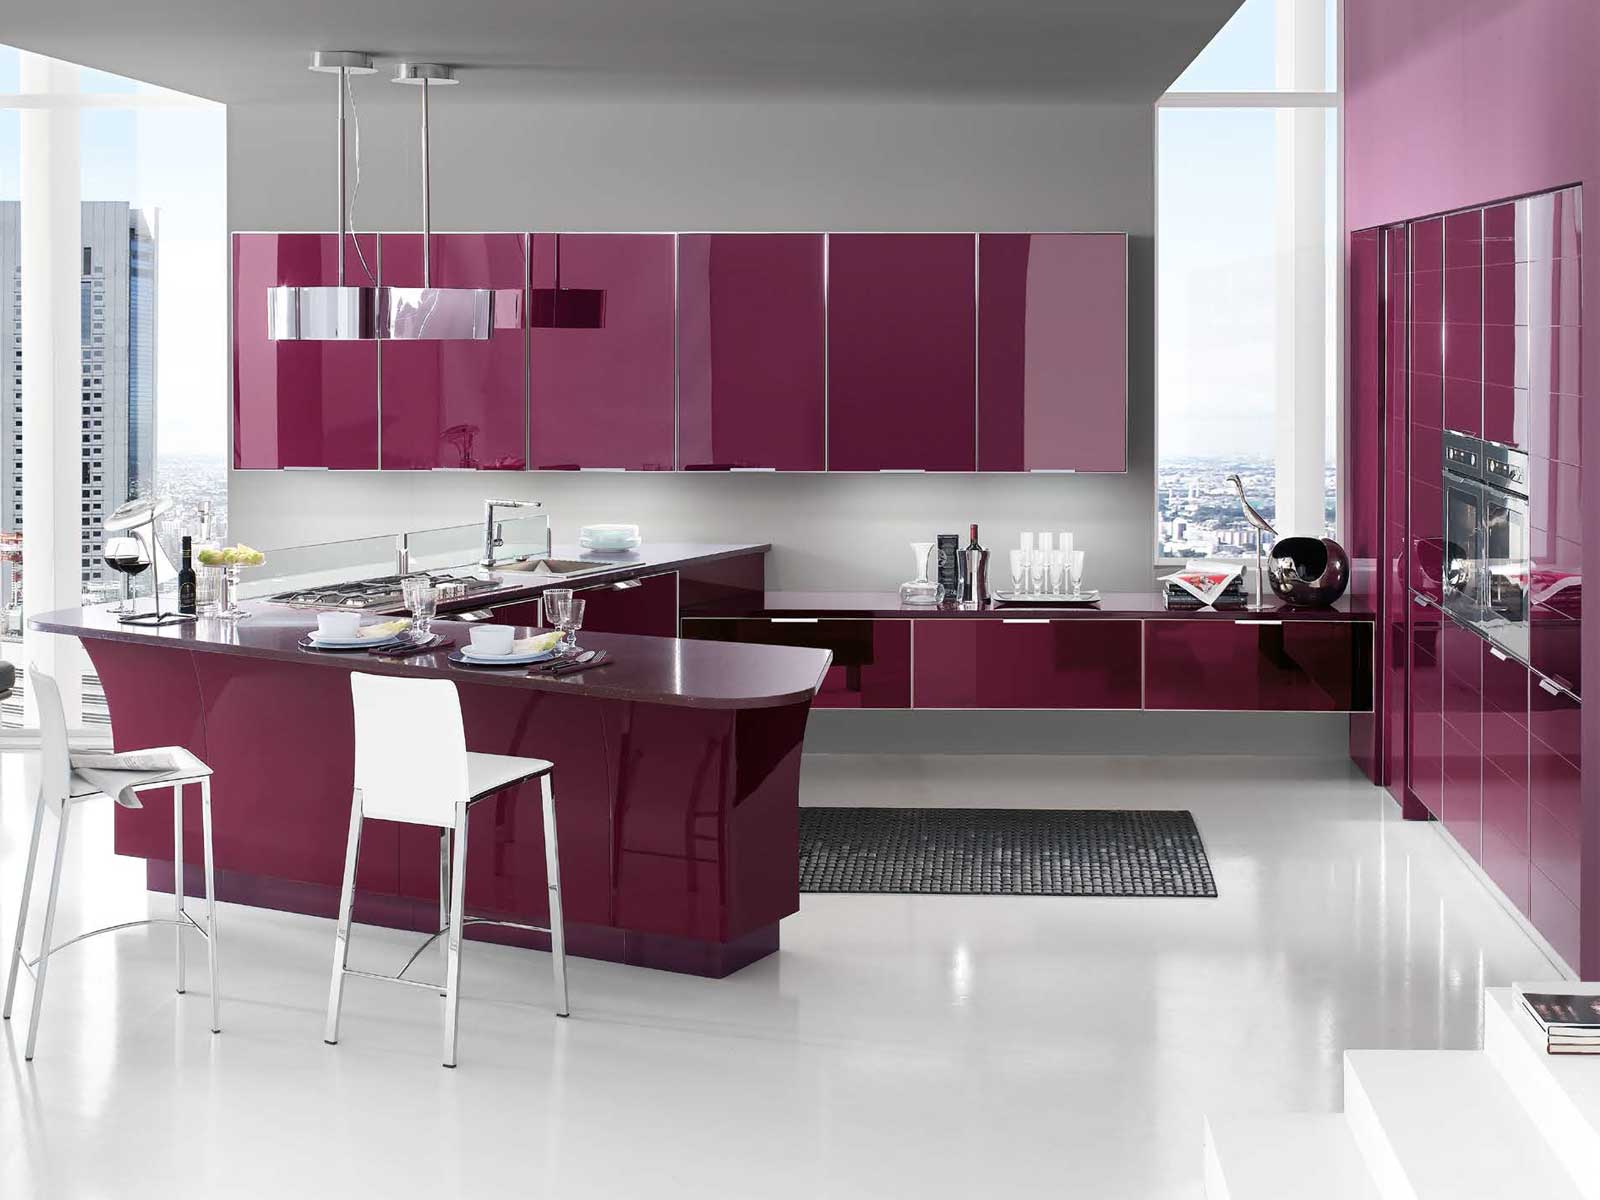 Кухня в стиле модерн, особенности стиля, как выбрать правильную отделку, мебель, палитру и декор - 27 фото